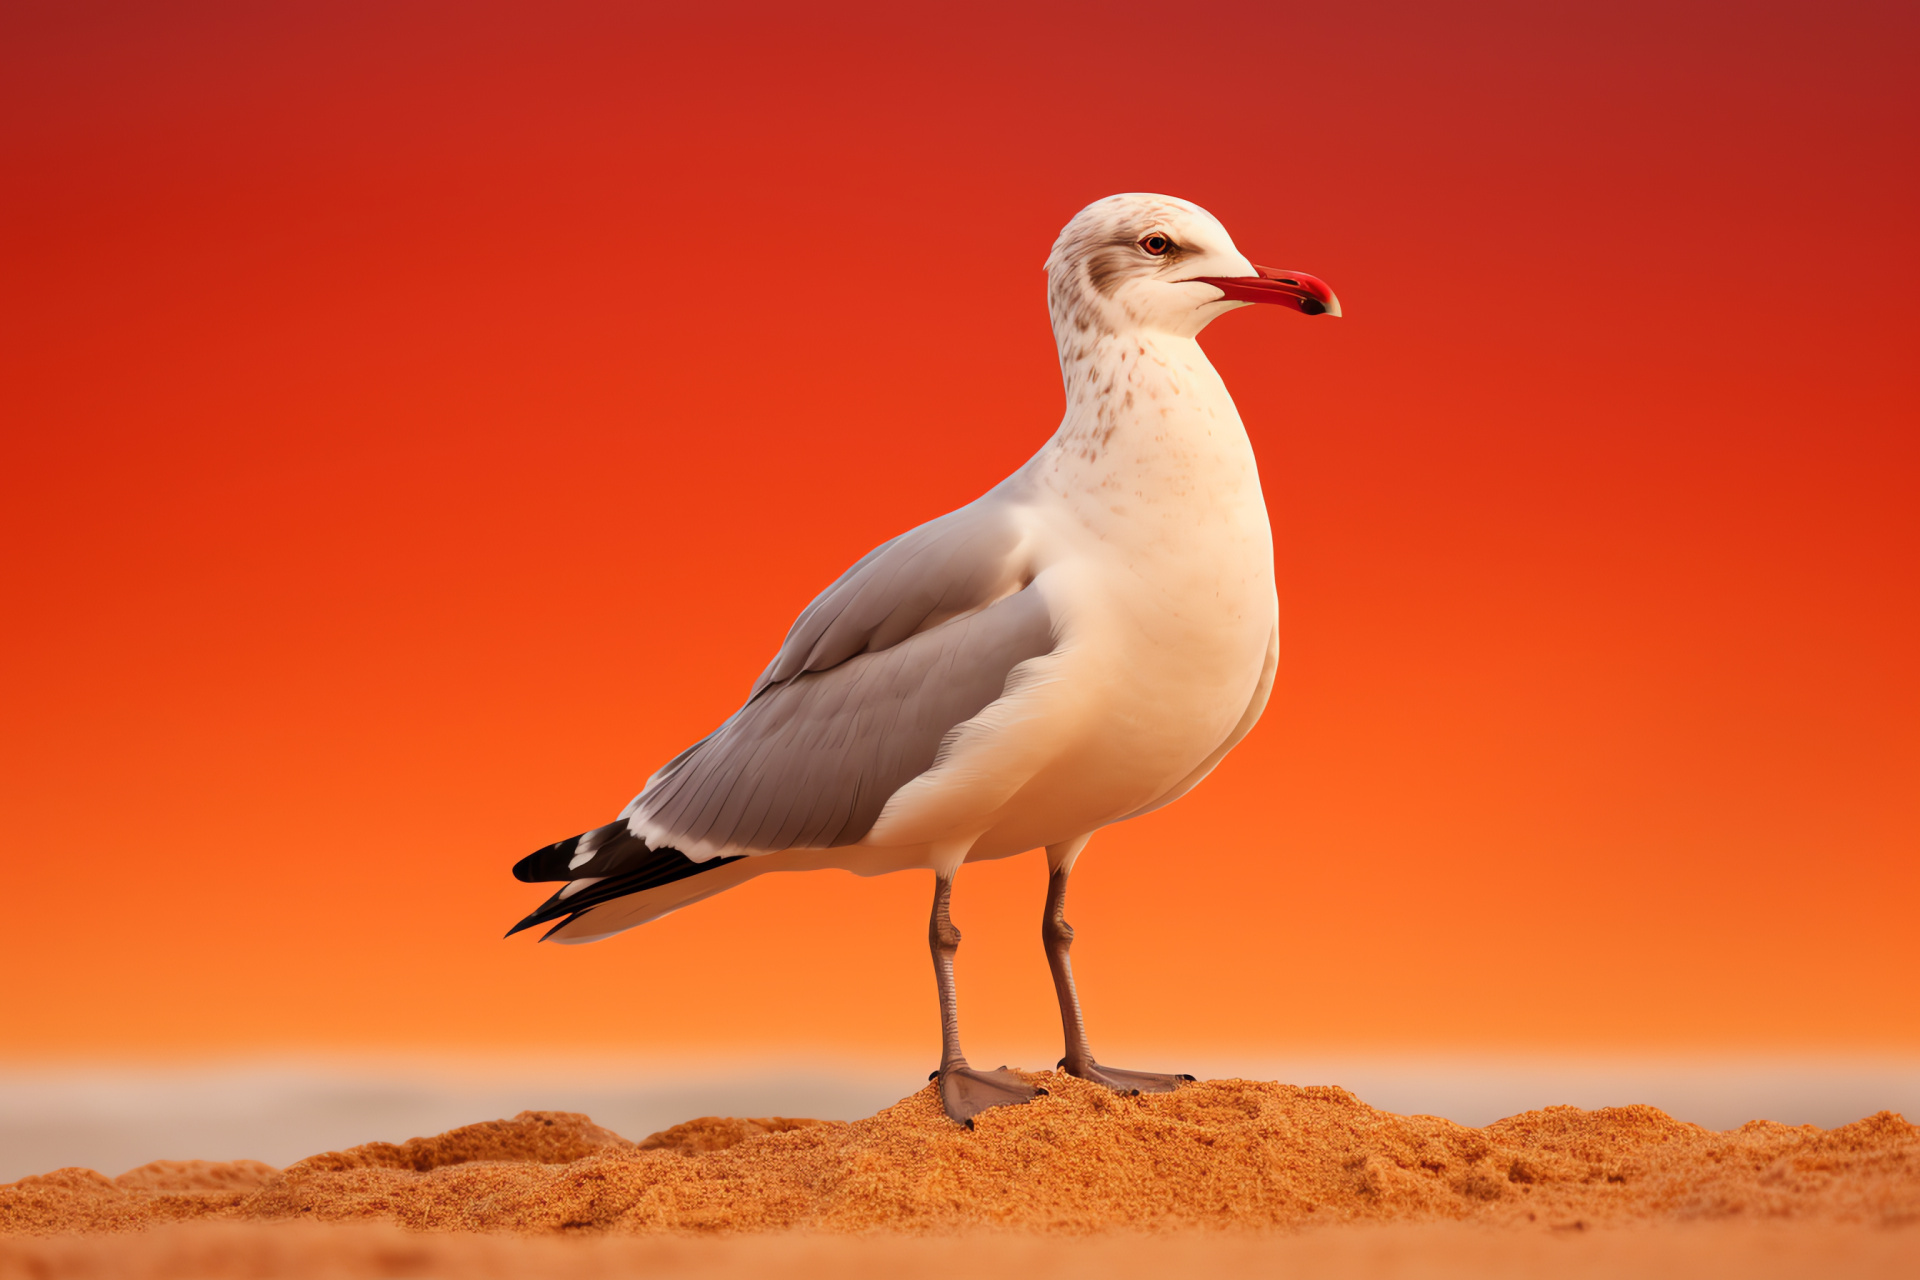 Seagull on shore, Coastal bird, Beach winged guest, Sand dwelling, Shoreline avian, HD Desktop Wallpaper